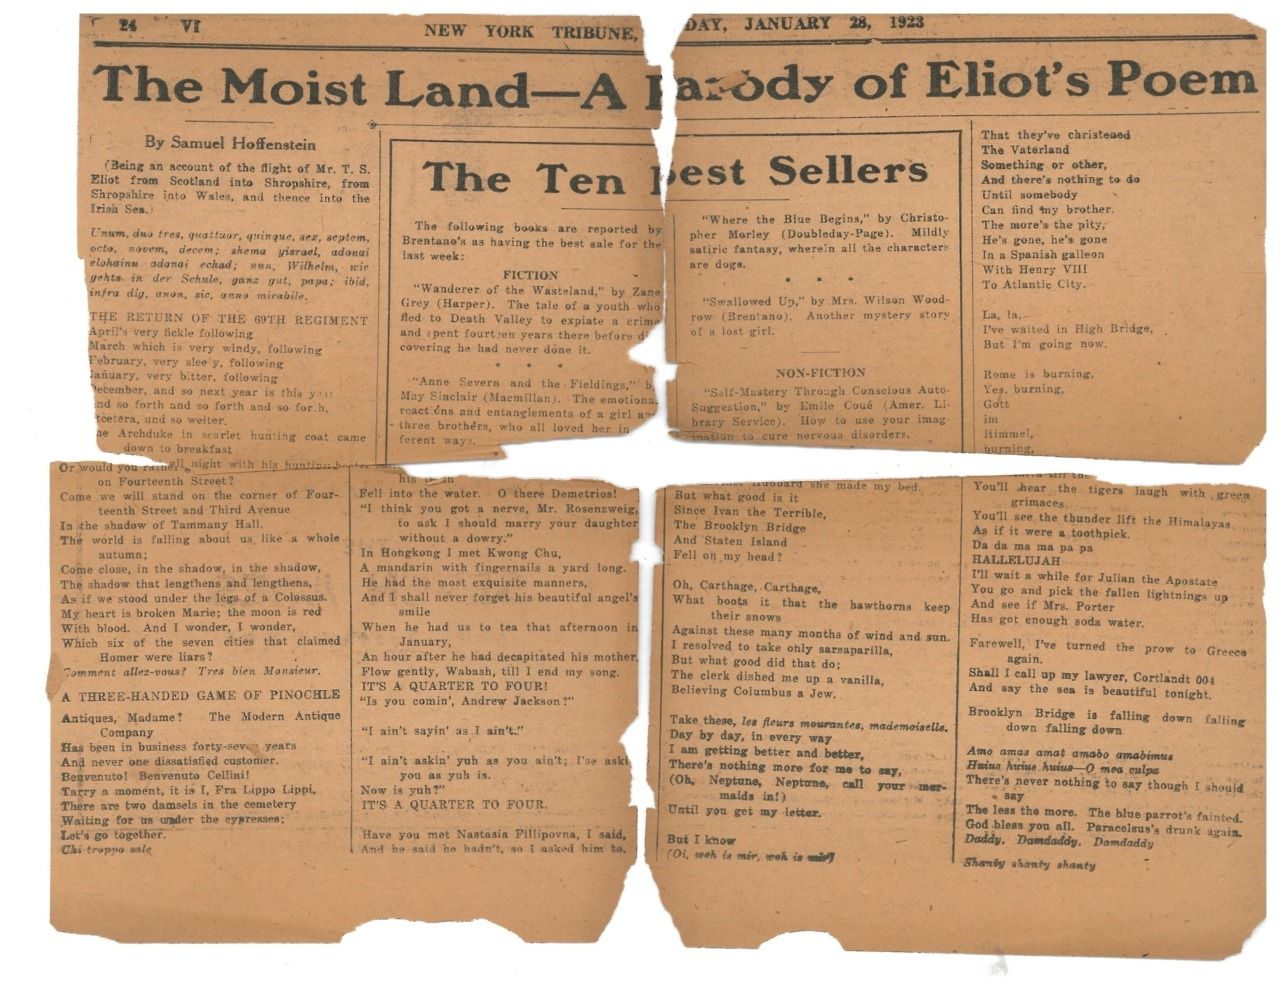 Sam Hoffenstein’s “The Moist Land,” New York Tribune January 28, 1923